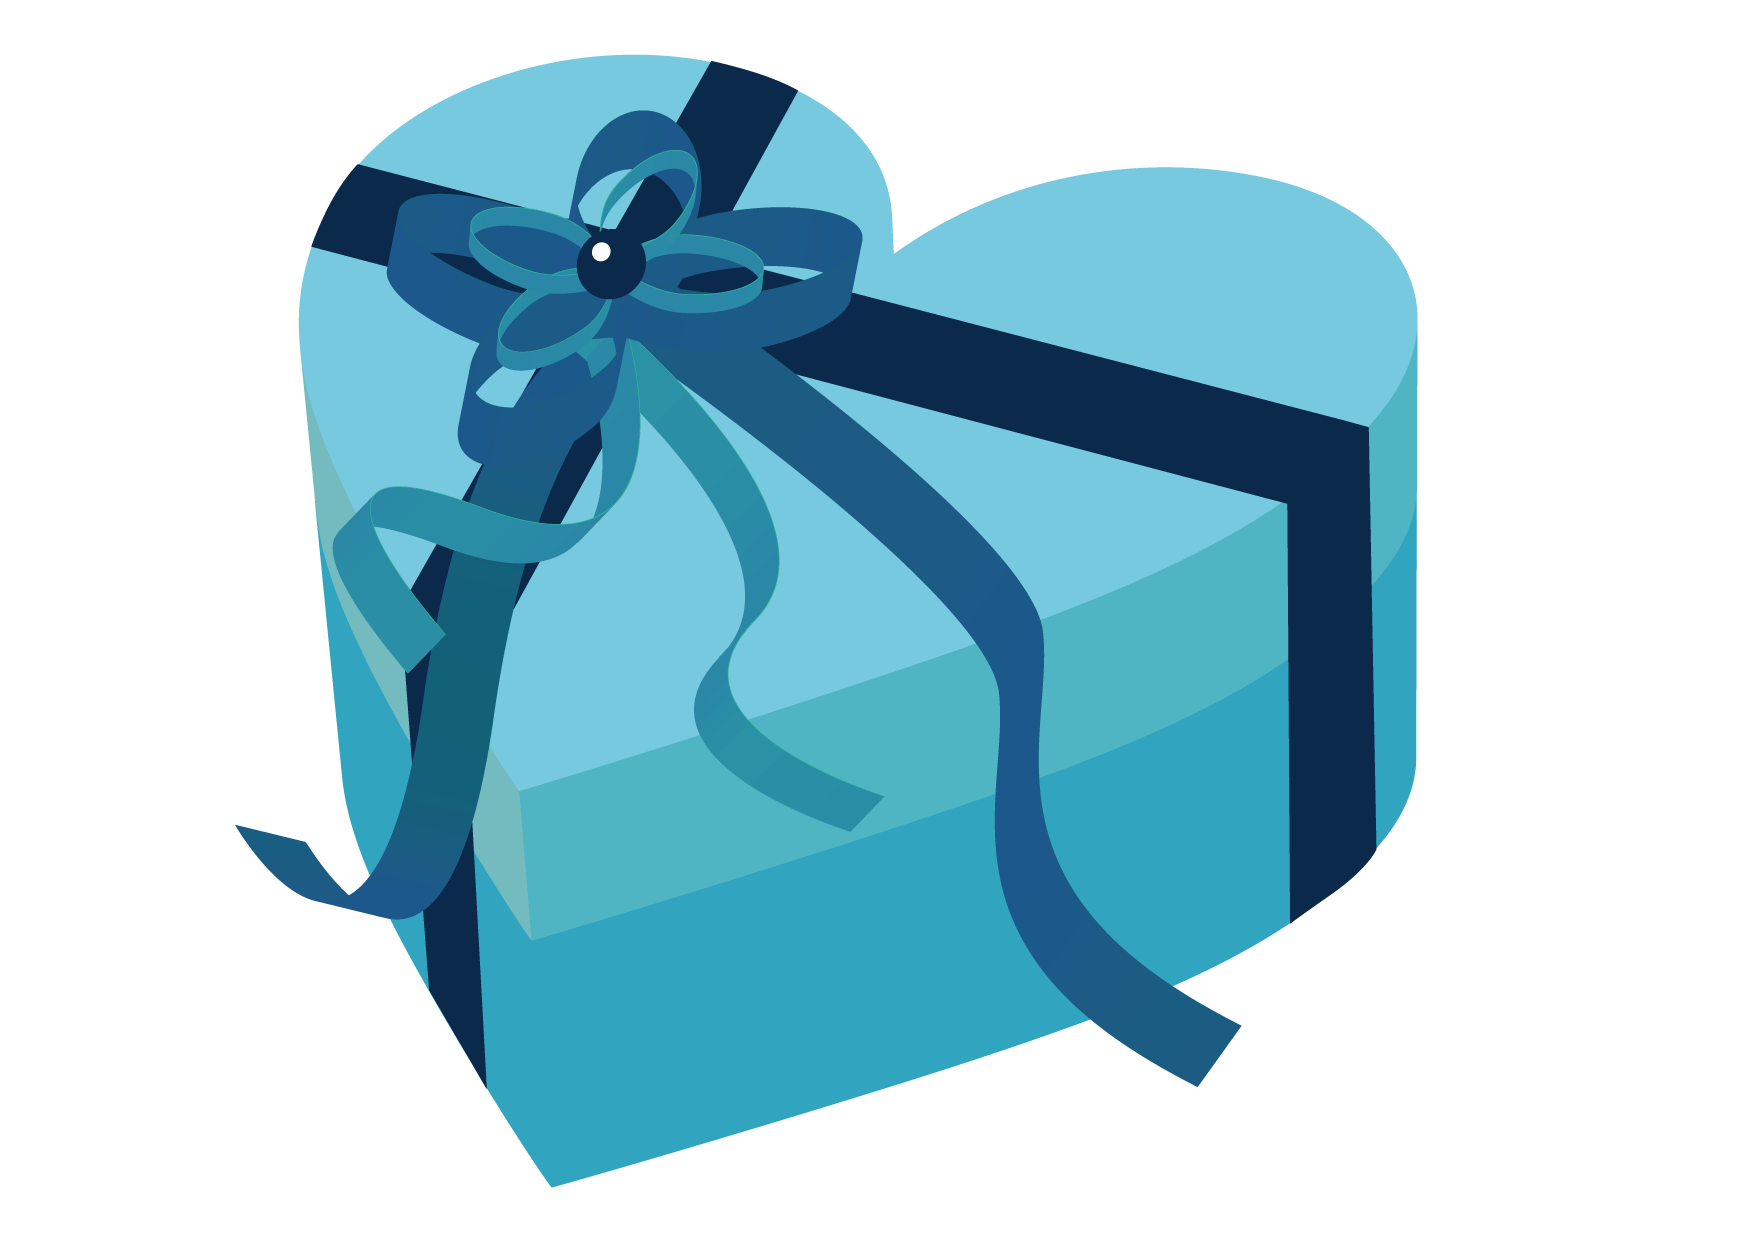 可愛いイラスト無料 バレンタイン ハート ブルー 箱 Free Illustration Valentine Heart Blue Box 公式 イラスト素材サイト イラストダウンロード